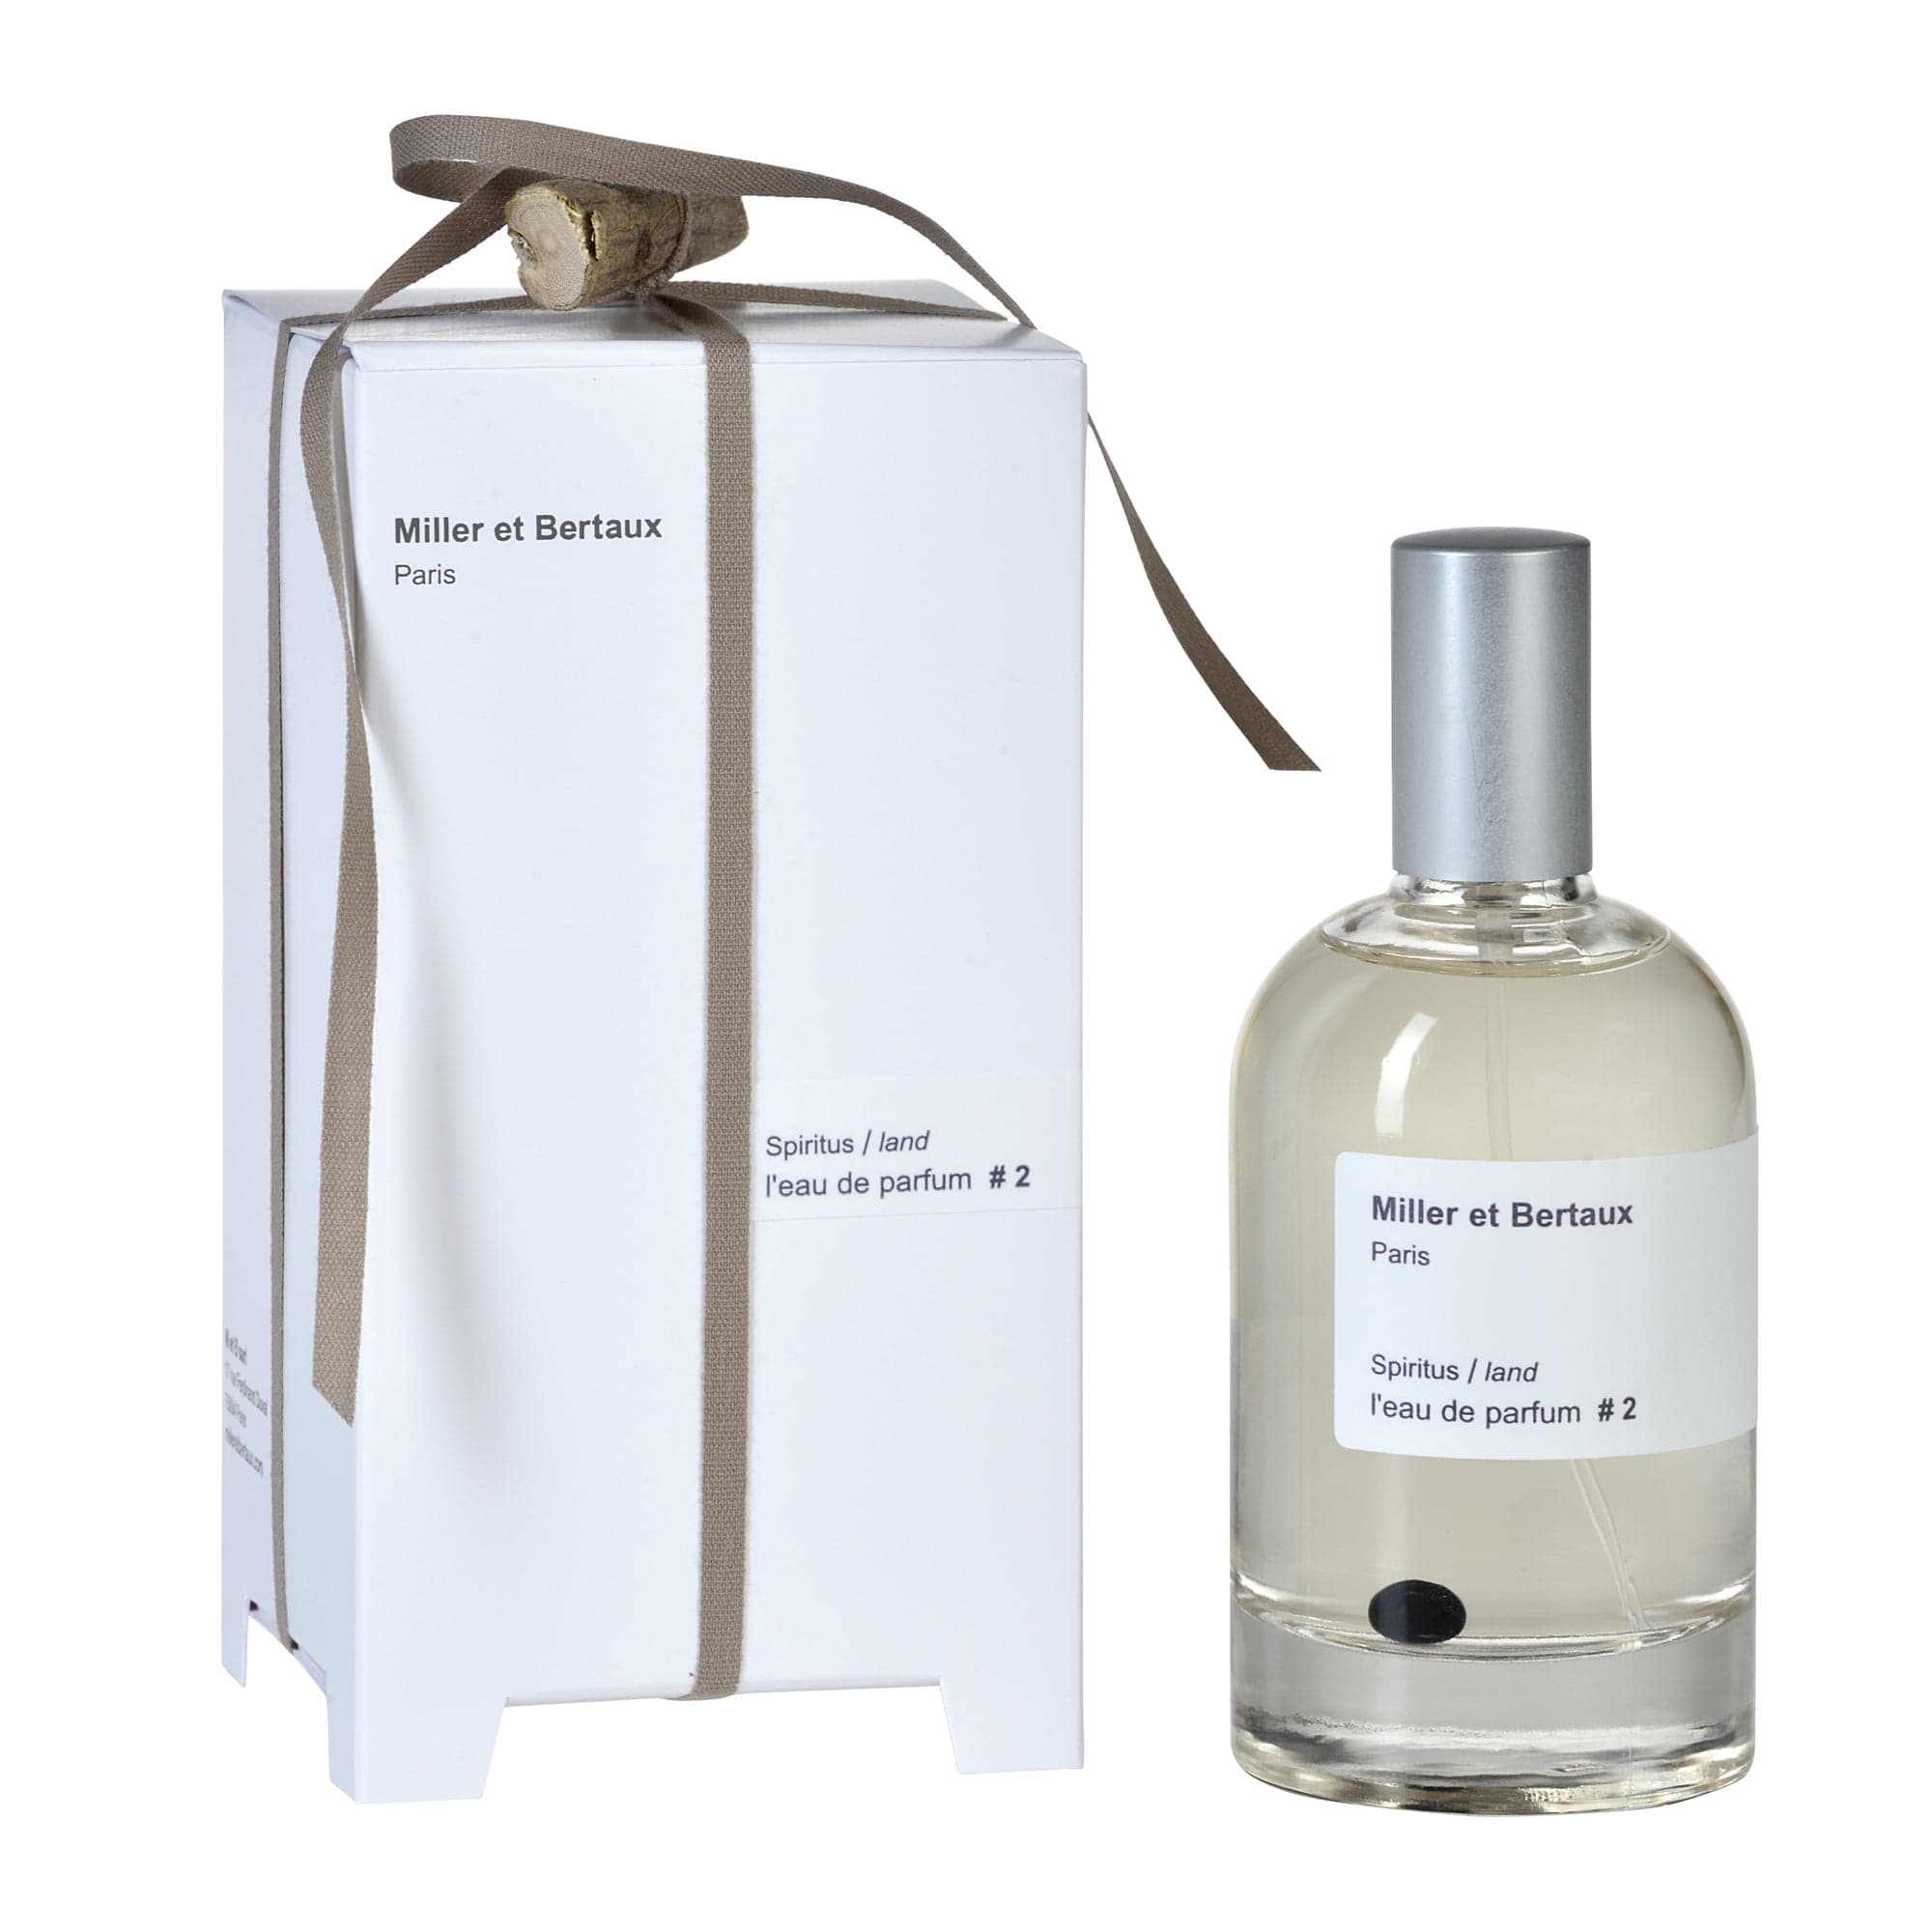 l'eau de parfum #2 de Miller et Bertaux Eau de Parfum